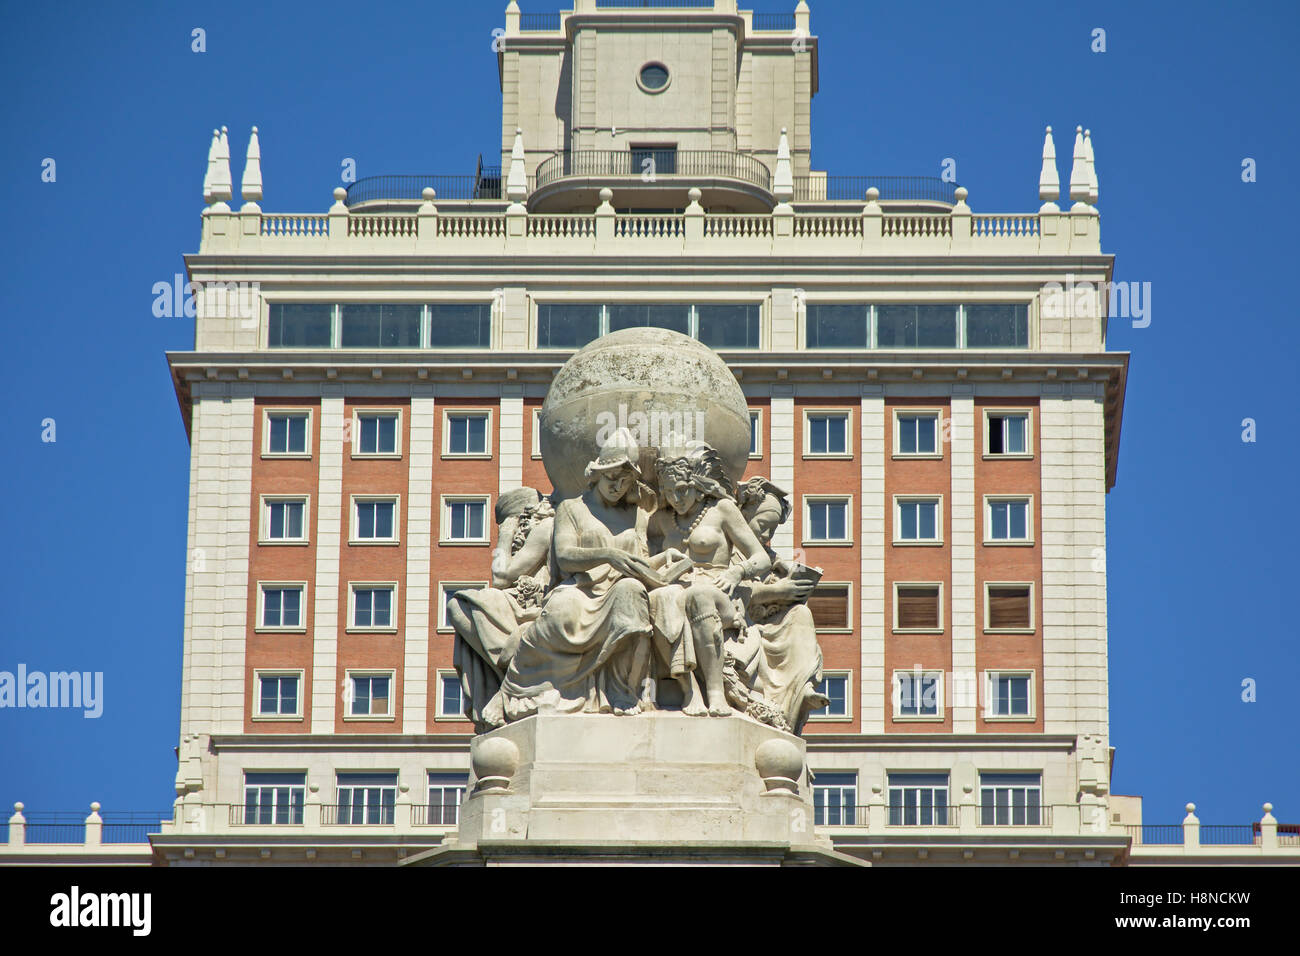 Détail du monument à Miguel de Cervantes Saavedra avec 'Edificio Espana' skyscraper derrière Banque D'Images